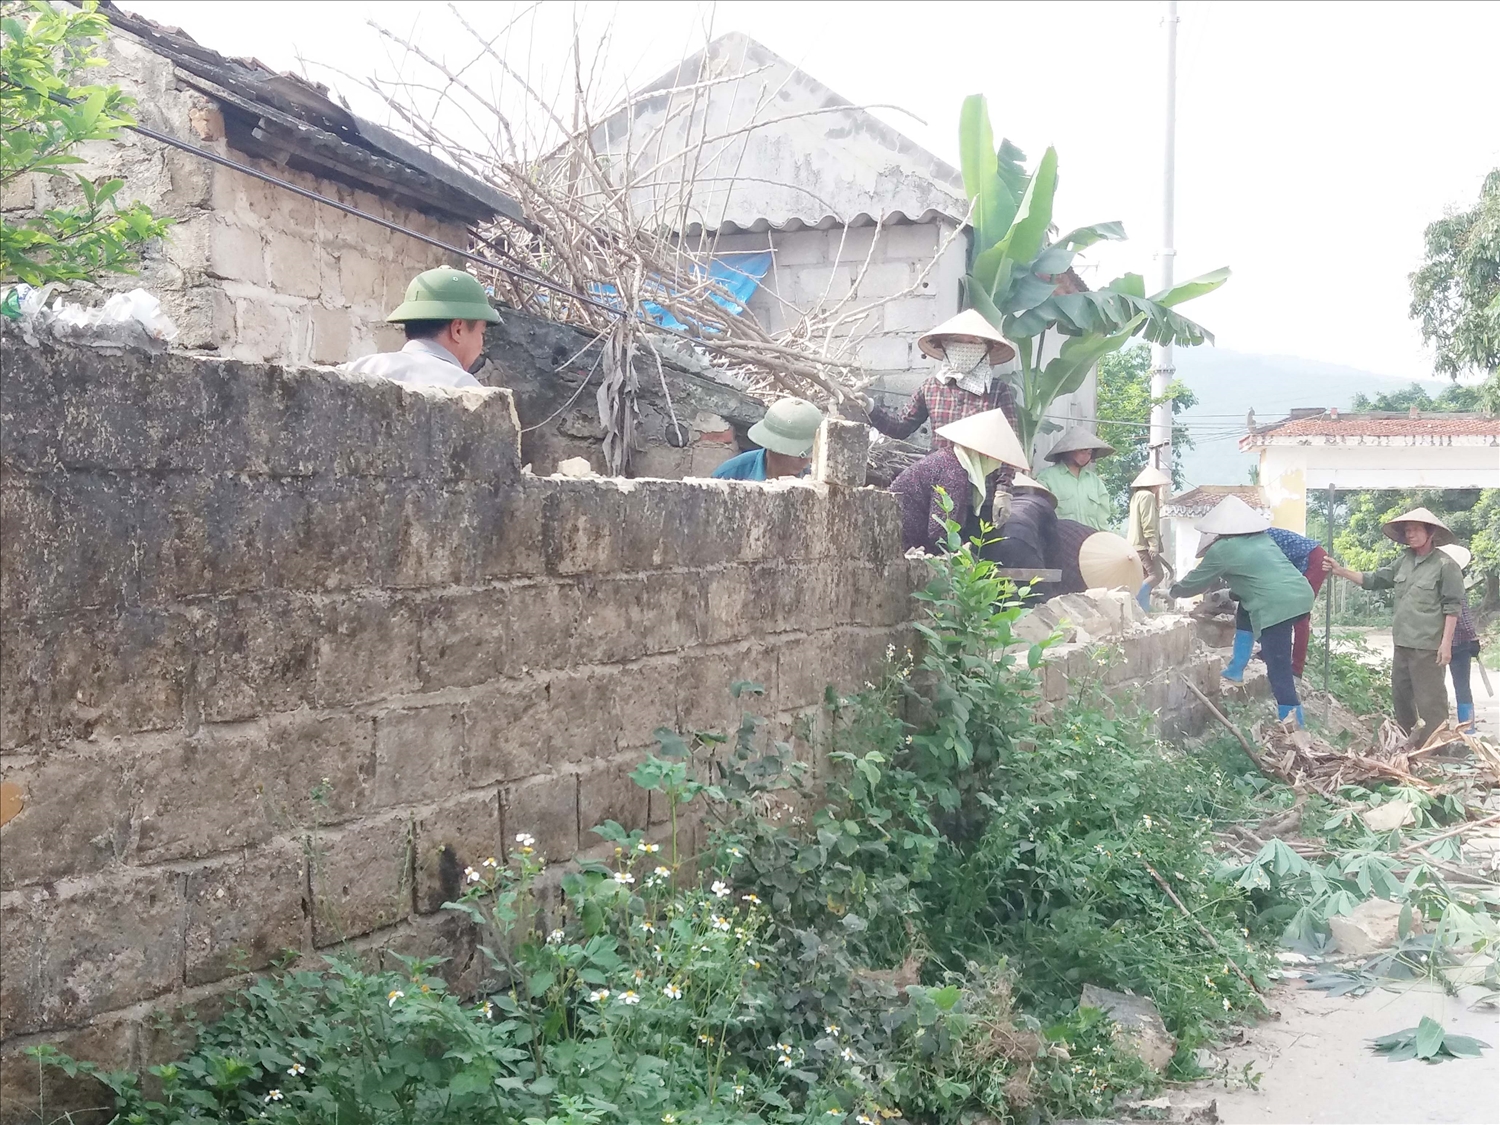 Từ tuyên truyền, vận động của Người có uy tín, người dân thôn Phú Ninh tích cực xây dựng nông thôn mới (Trong ảnh: Người dân thôn Phú Ninh vệ sinh đường làng, thu gom rác thải)